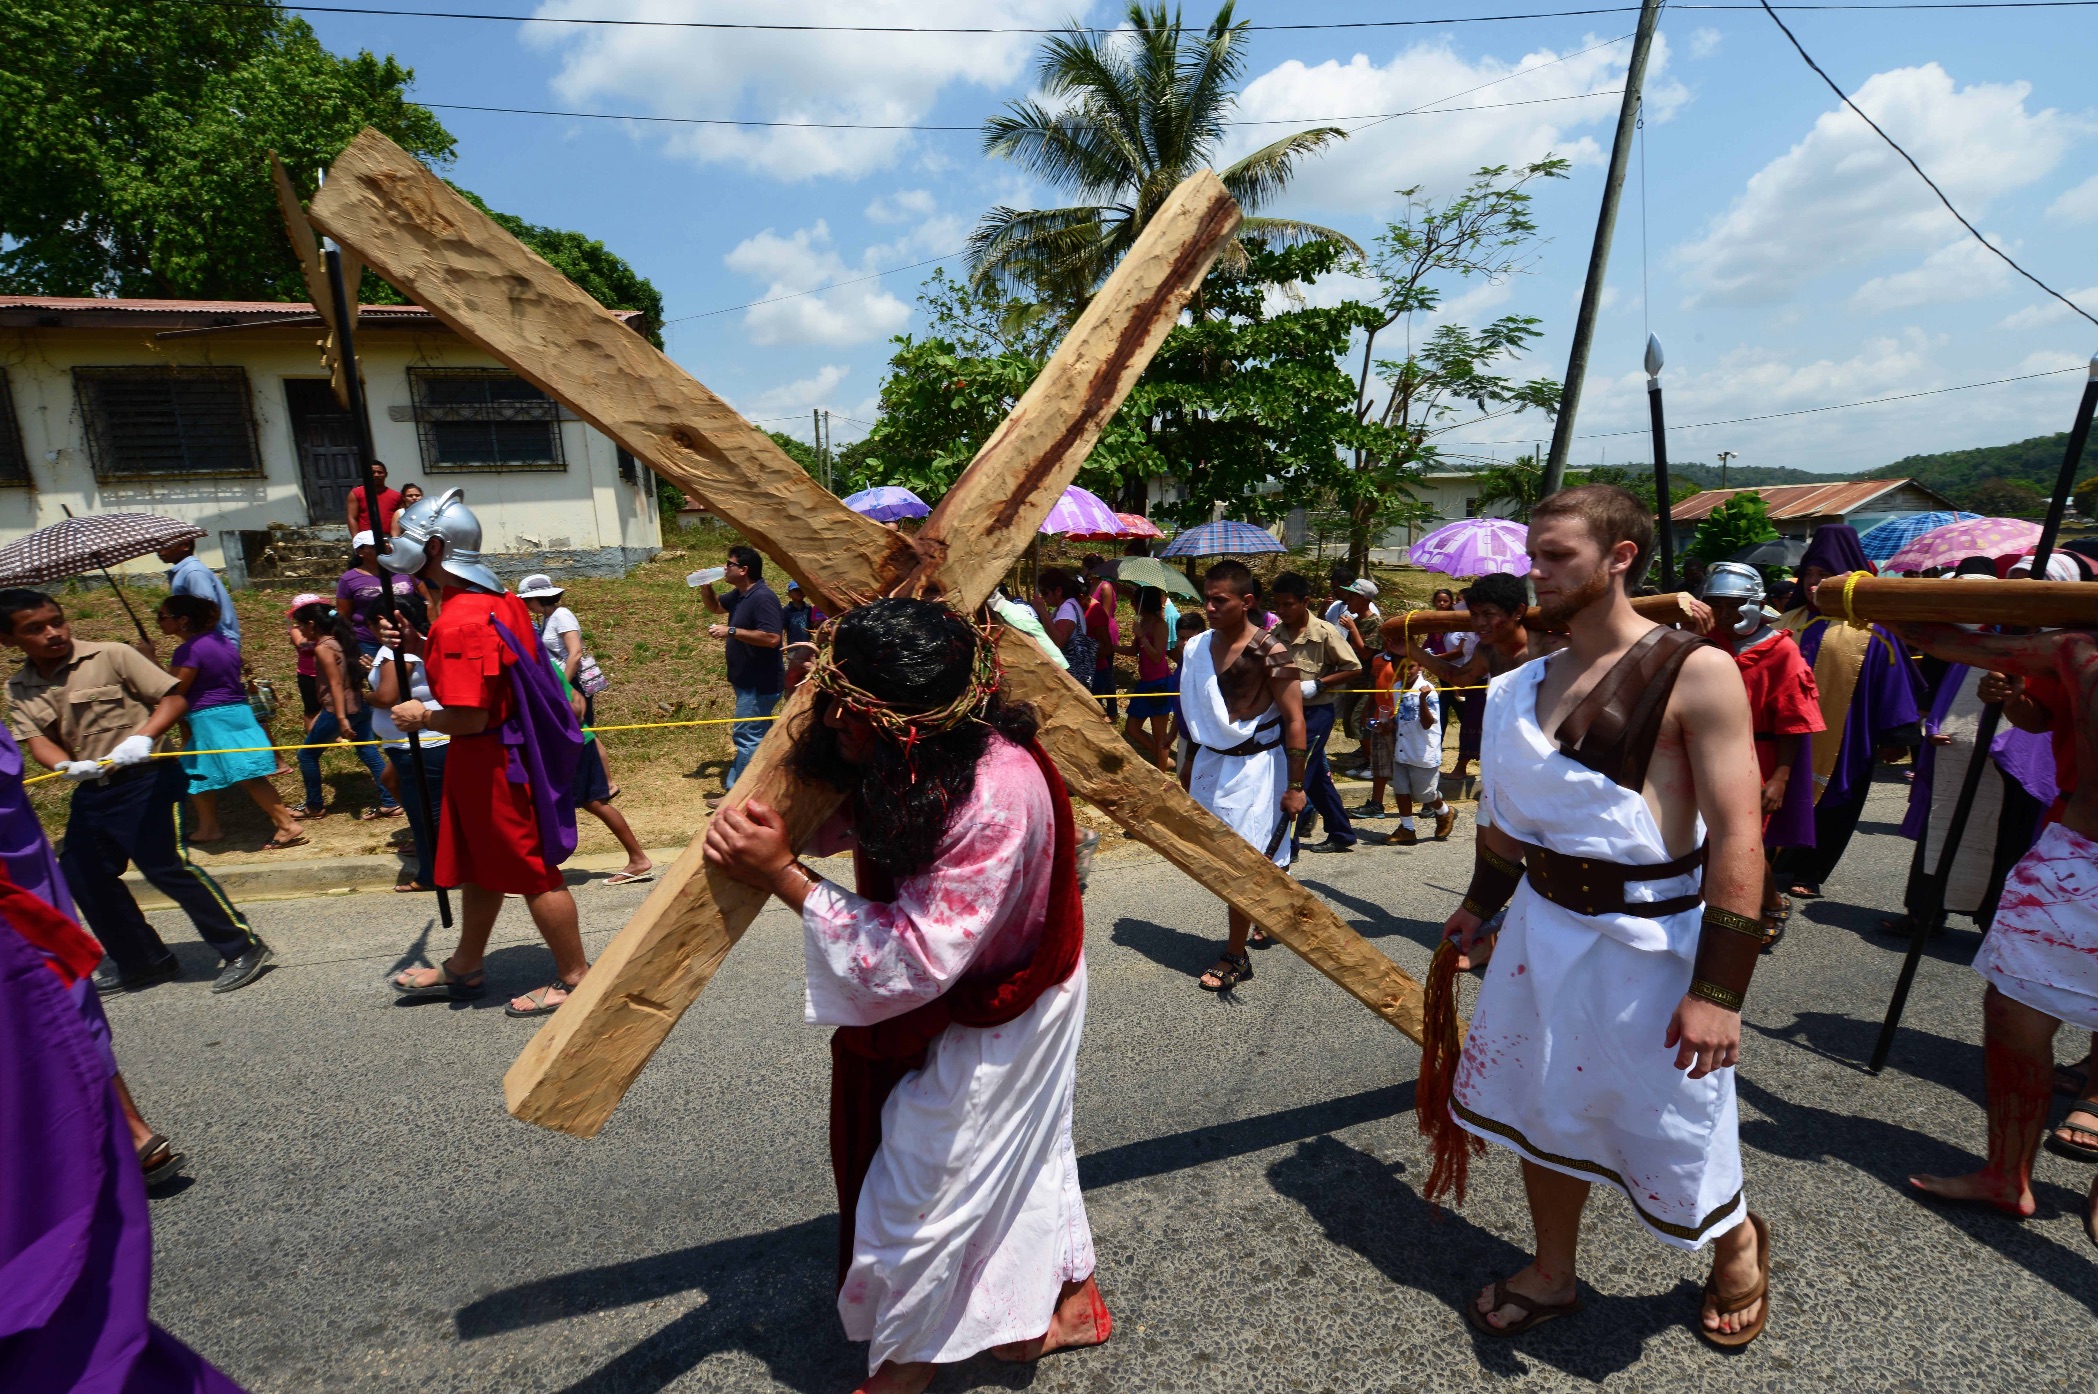 Ostern feiern in Belize | Das Heilige &amp; das Herzliche | 2